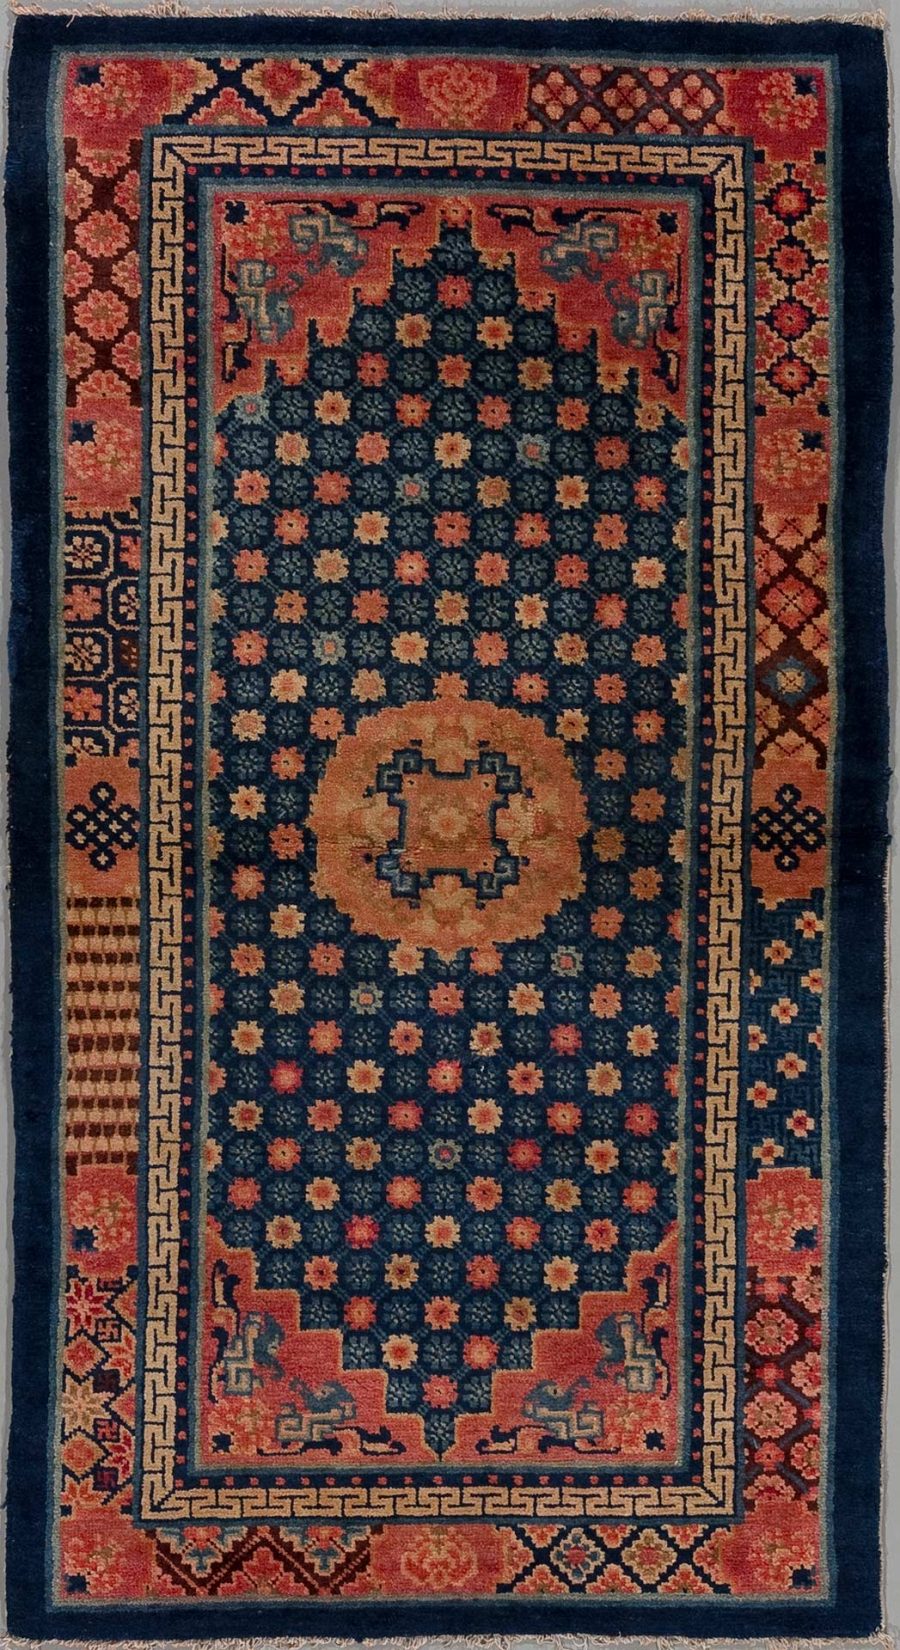 Antiker handgeknüpfter Teppich mit komplexen geometrischen und floralen Mustern in Dunkelblau, Rostrot und Beigetönen, umgeben von mehreren Zierrahmen und zentralem Medaillon.